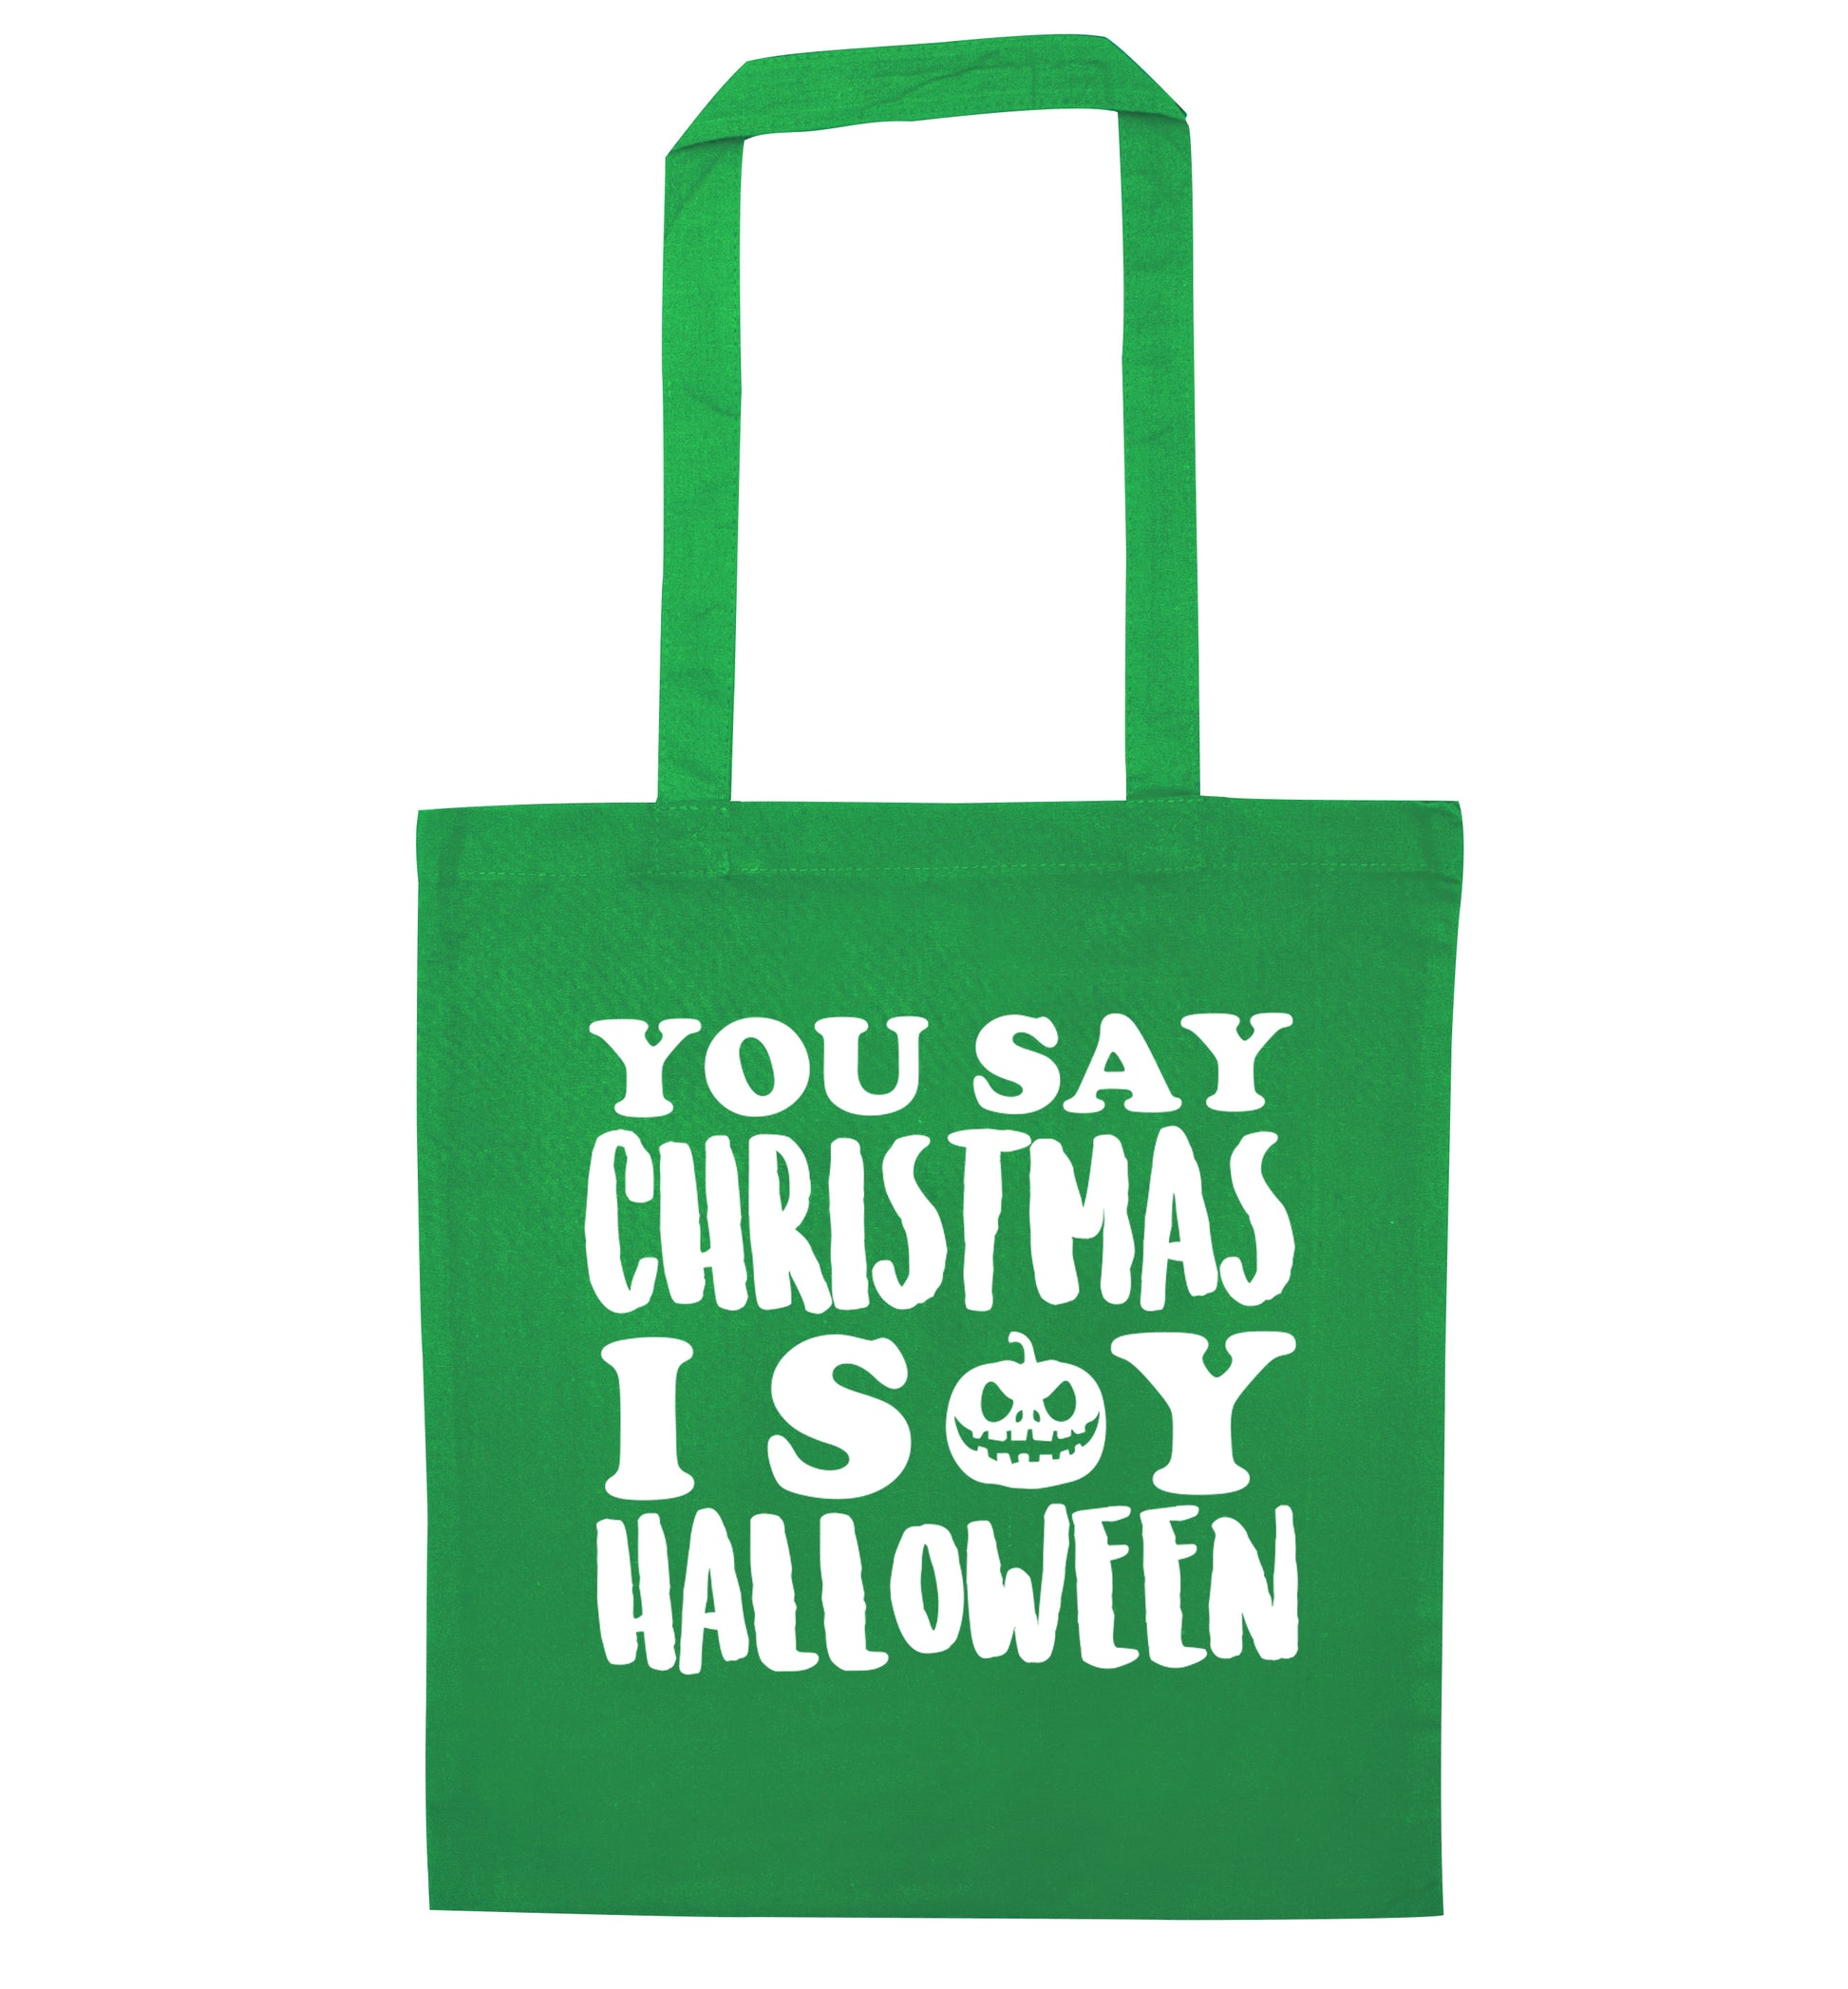 You say christmas I say halloween! green tote bag